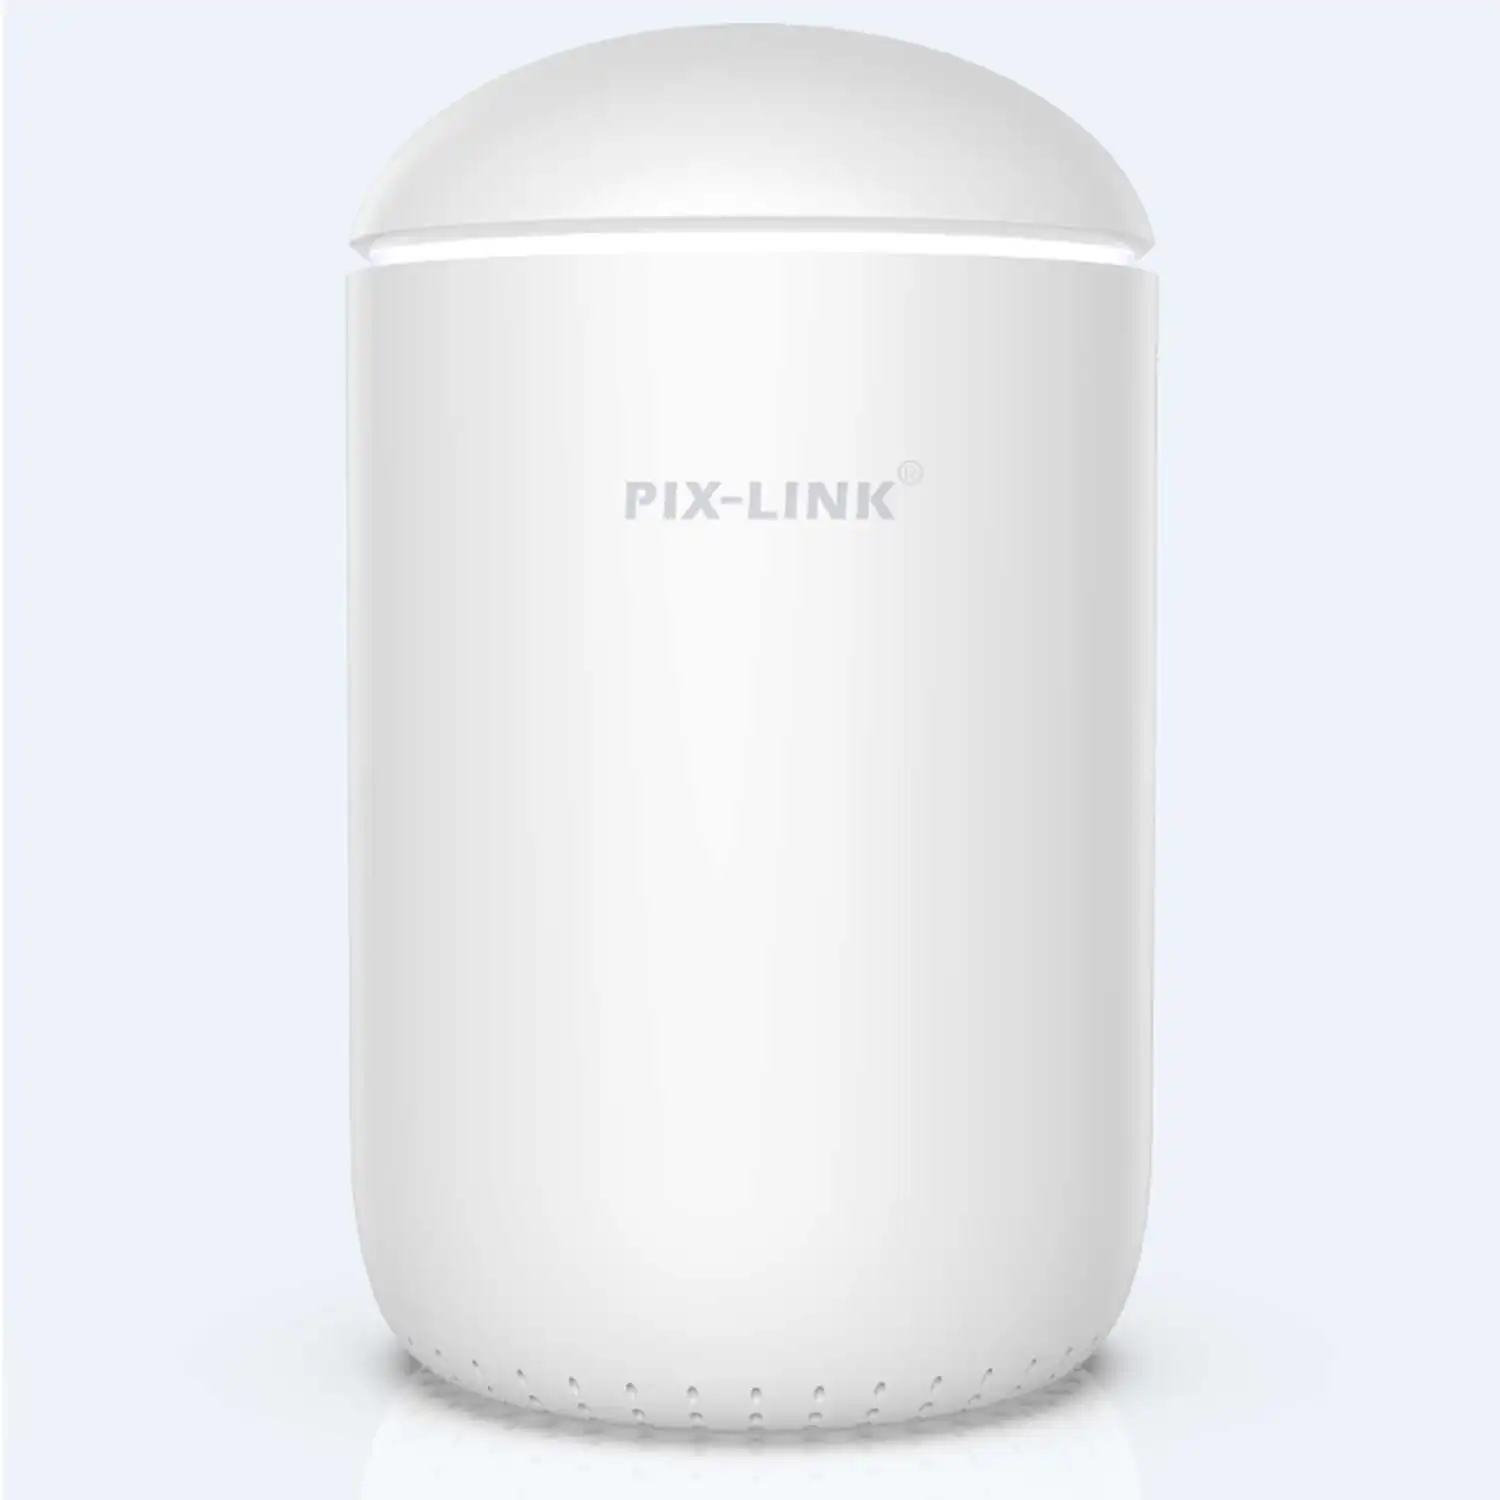 Pix-Link Hoge Kwaliteit 2.4G-5G 1800Mbps Dual Band Gigabit Draadloze Router Voor Gebruik Binnenshuis